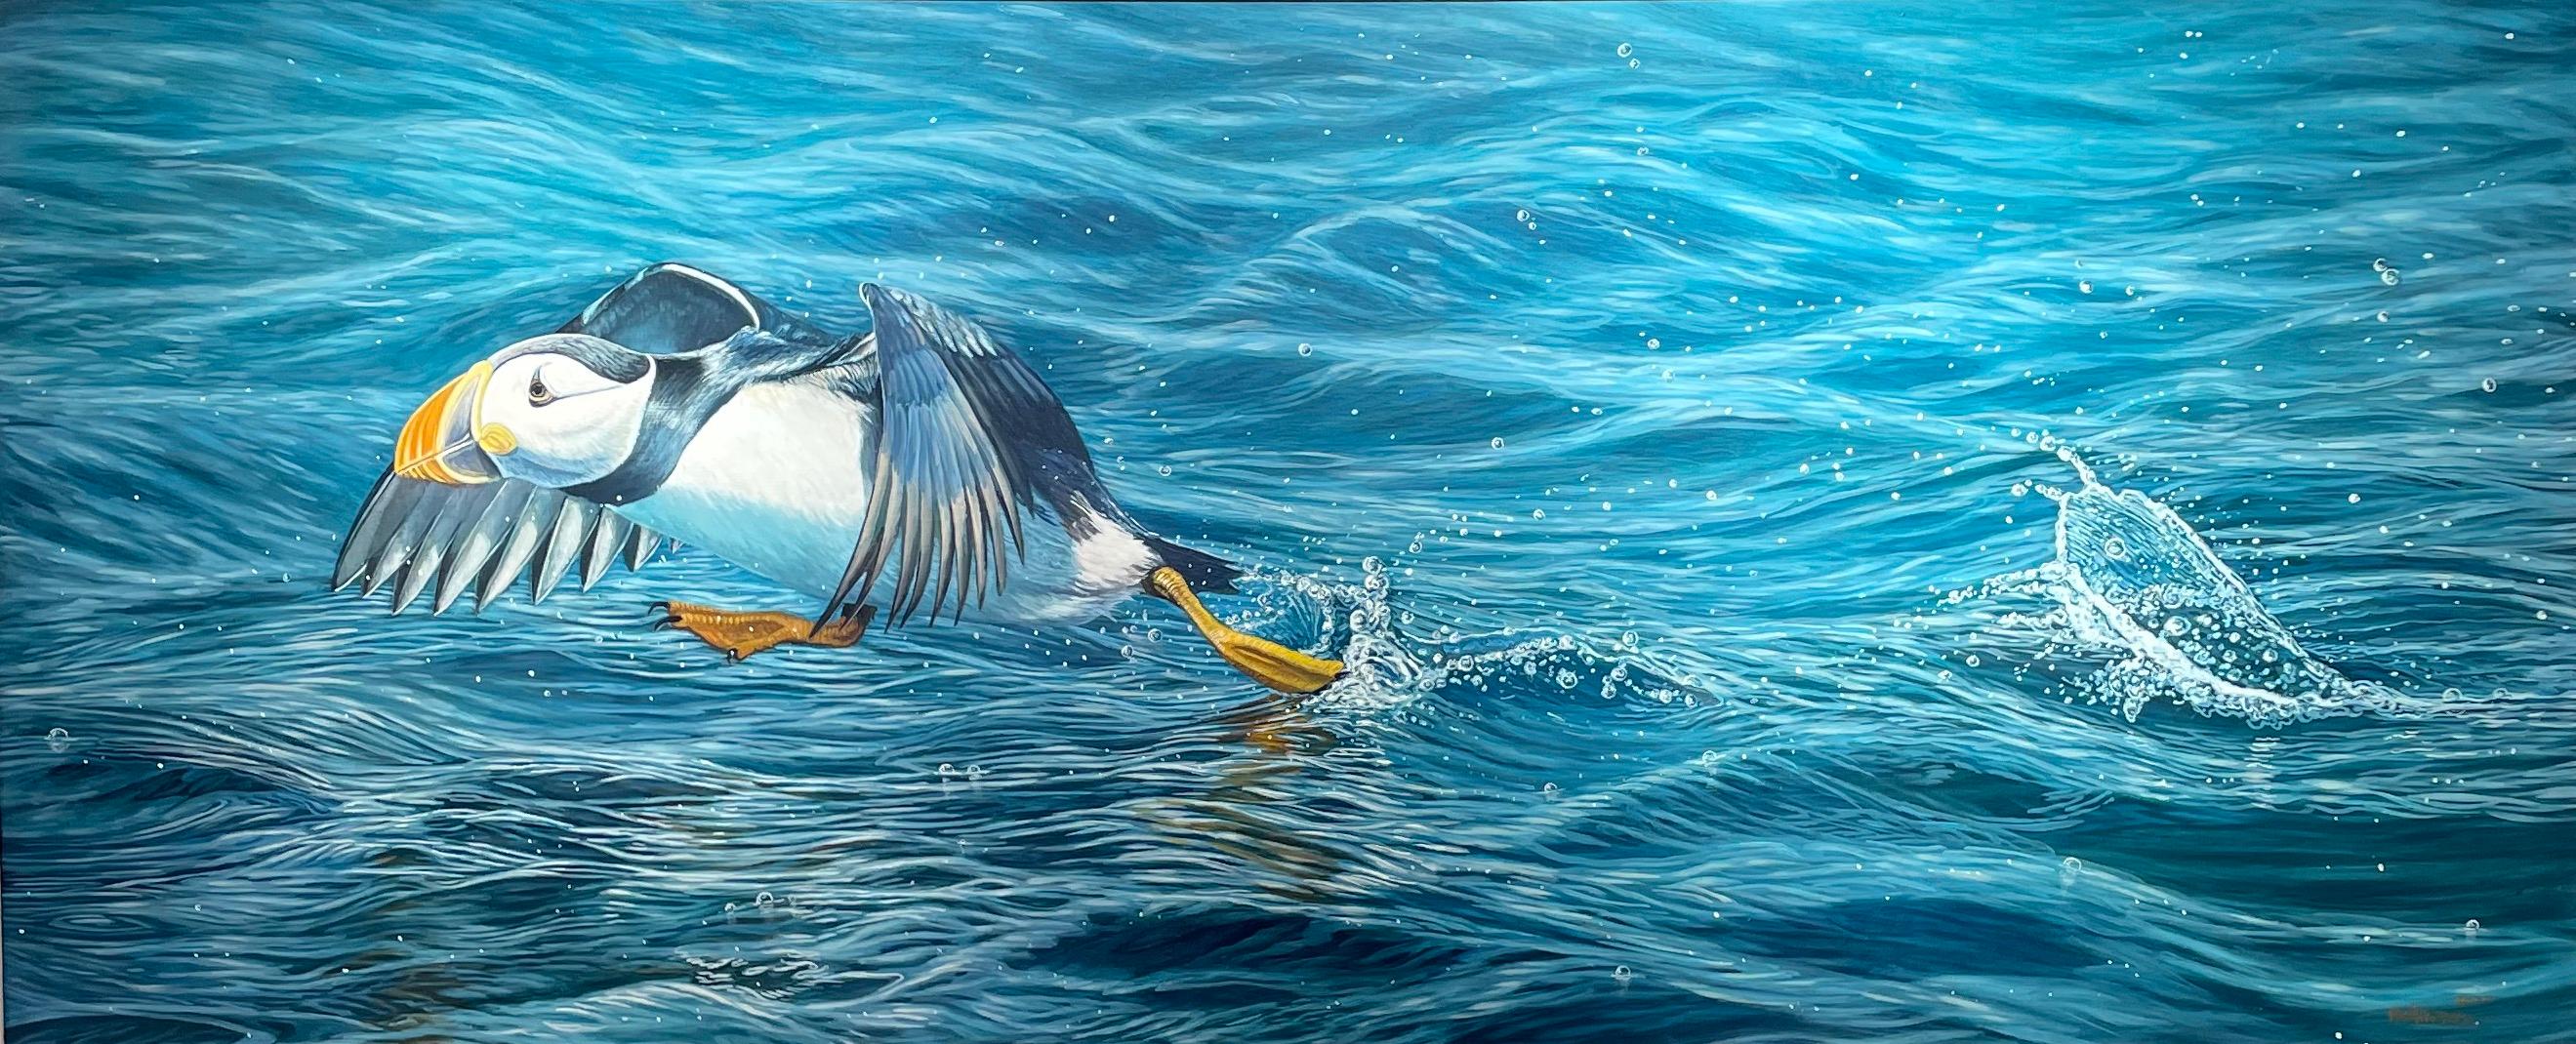 Ben Waddams Animal Painting – Fotorealistisches Wildtiergemälde „Leap of Faith“ eines Puffins auf leuchtend blauem Wasser